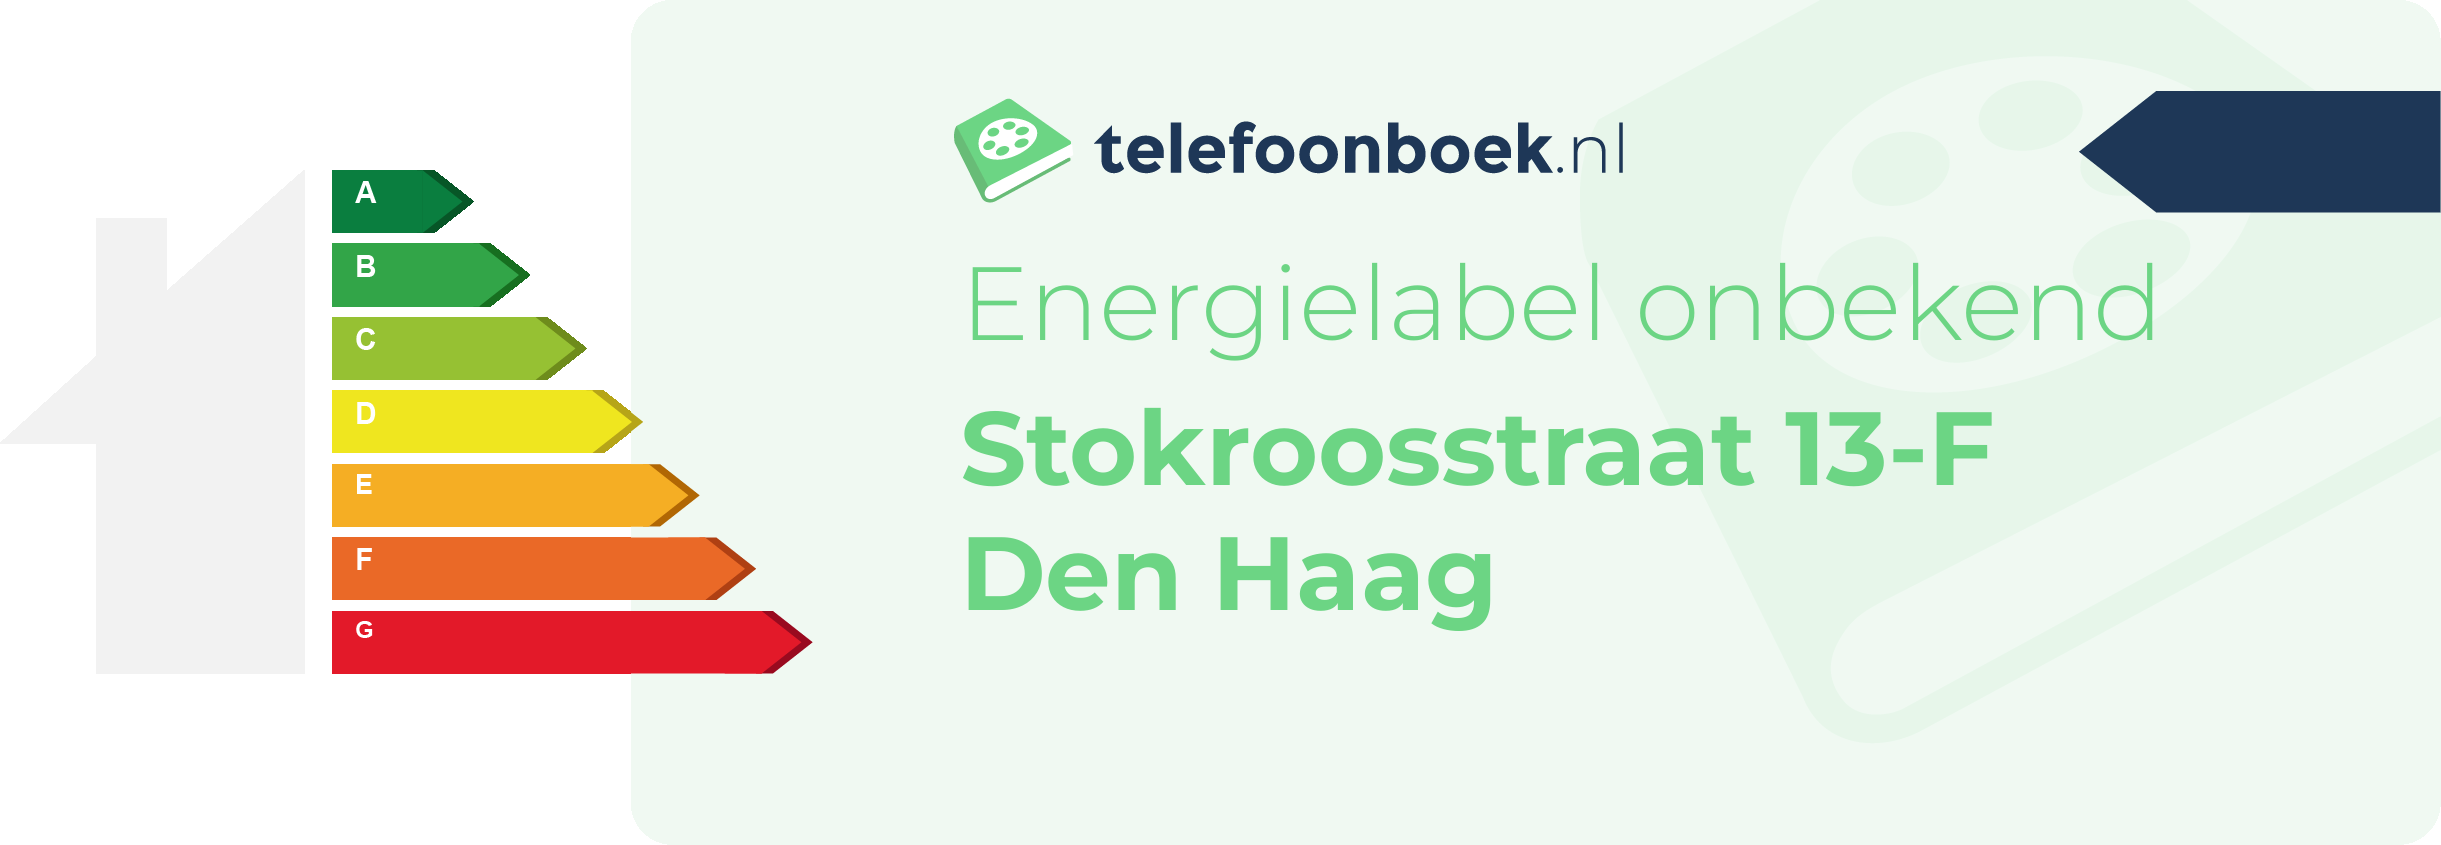 Energielabel Stokroosstraat 13-F Den Haag